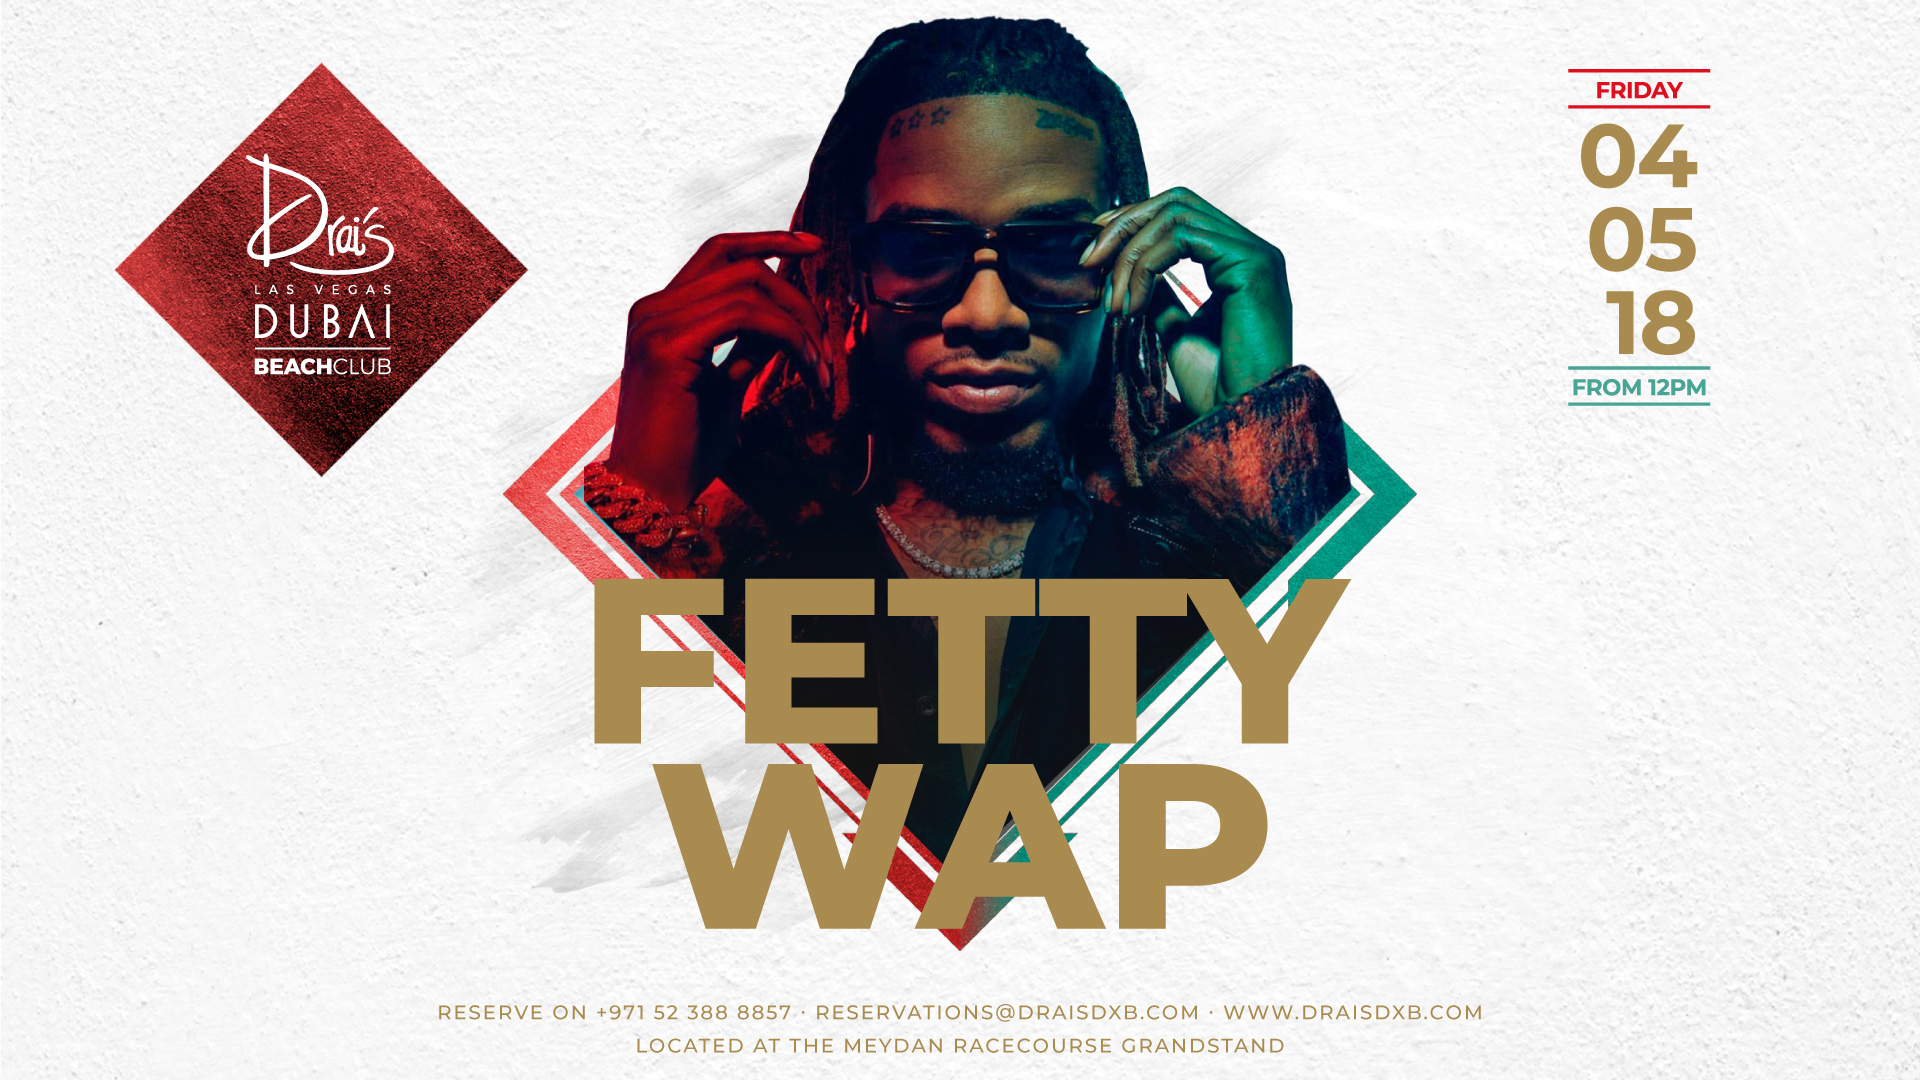 Fetty-wap - Afterhours , HD Wallpaper & Backgrounds